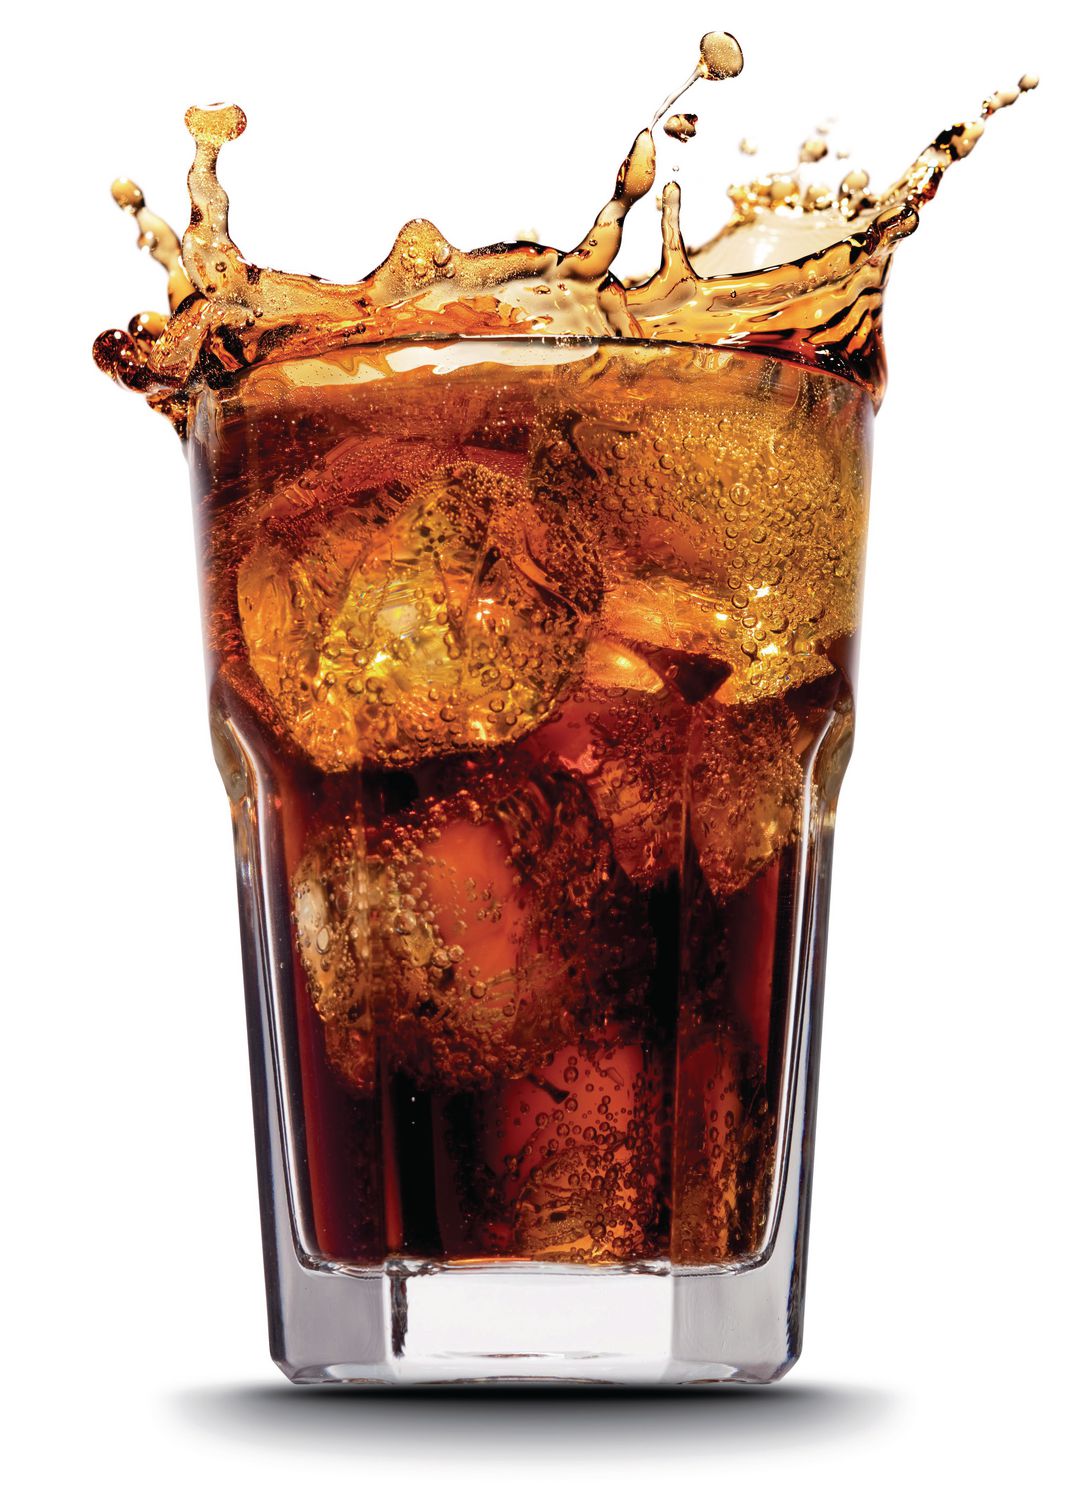 Sodastream, un challenger audacieux pour Coca-Cola